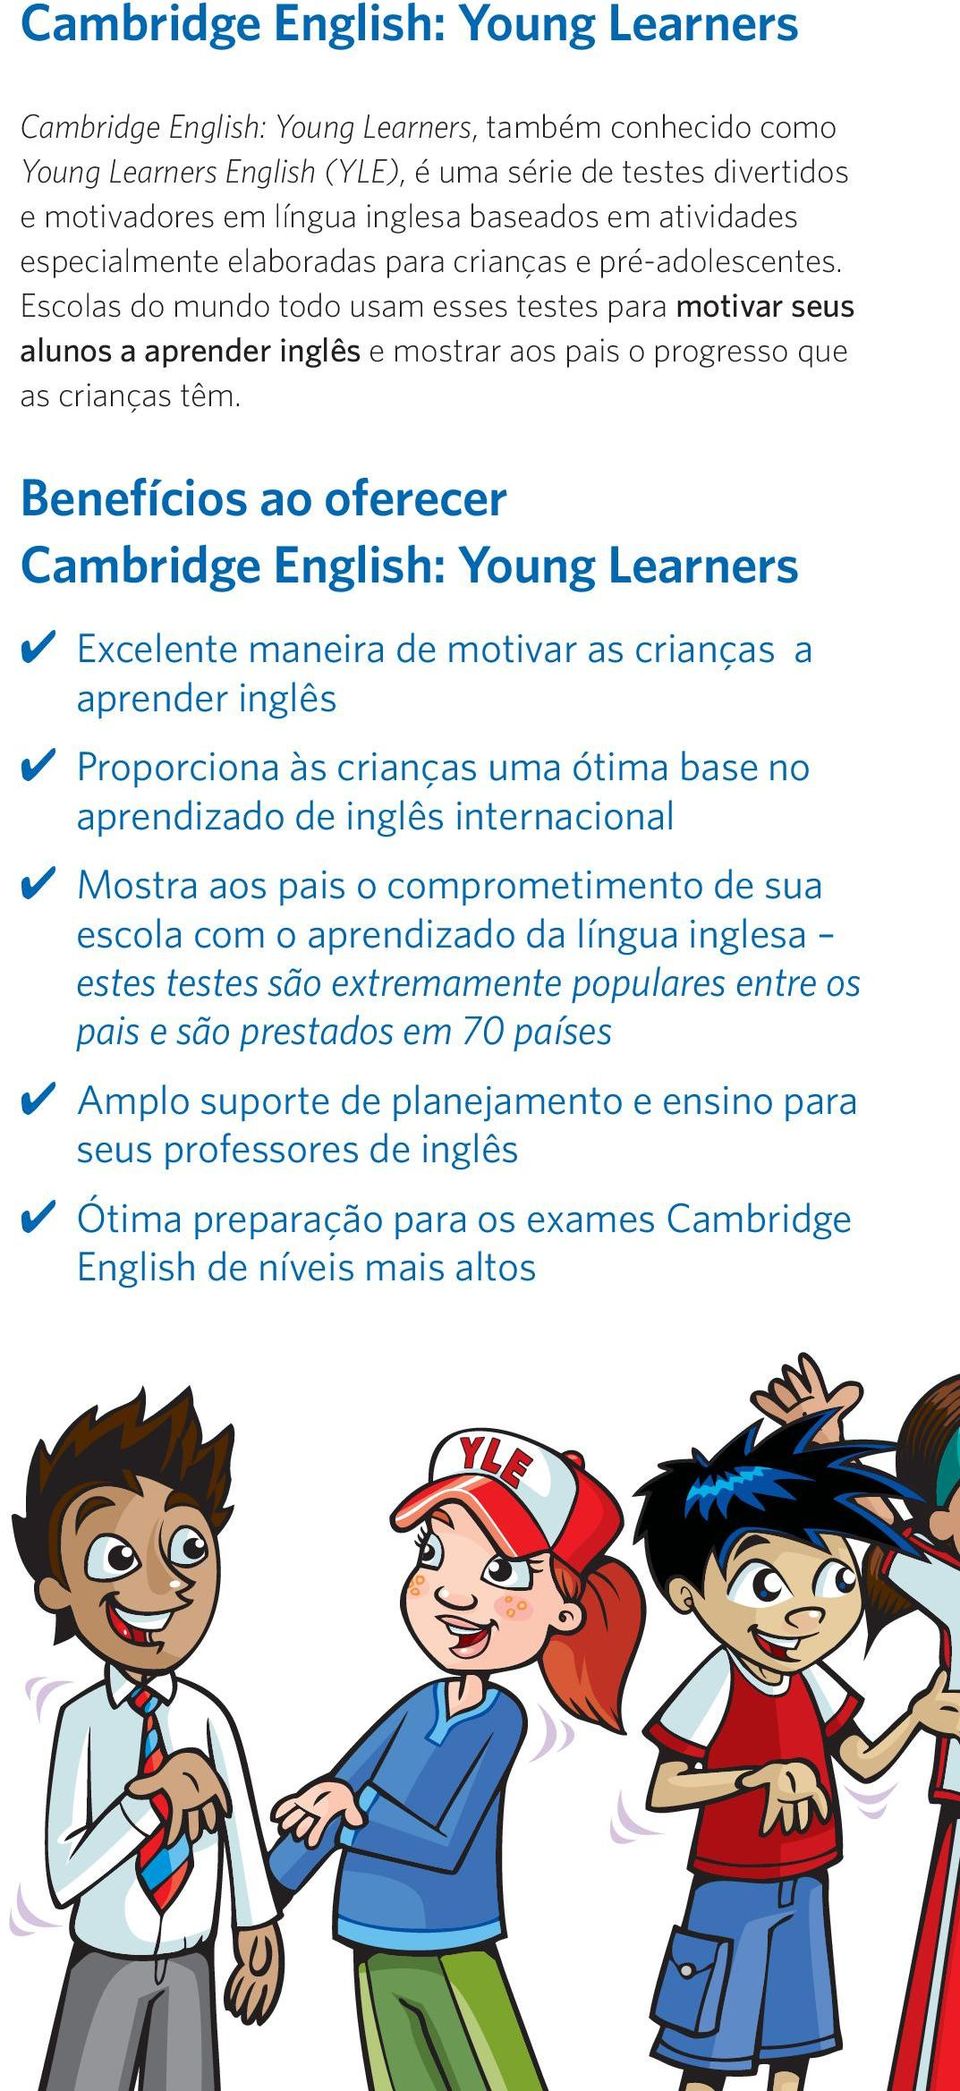 Escolas do mundo todo usam esses testes para motivar seus alunos a aprender inglês e mostrar aos pais o progresso que as crianças têm.